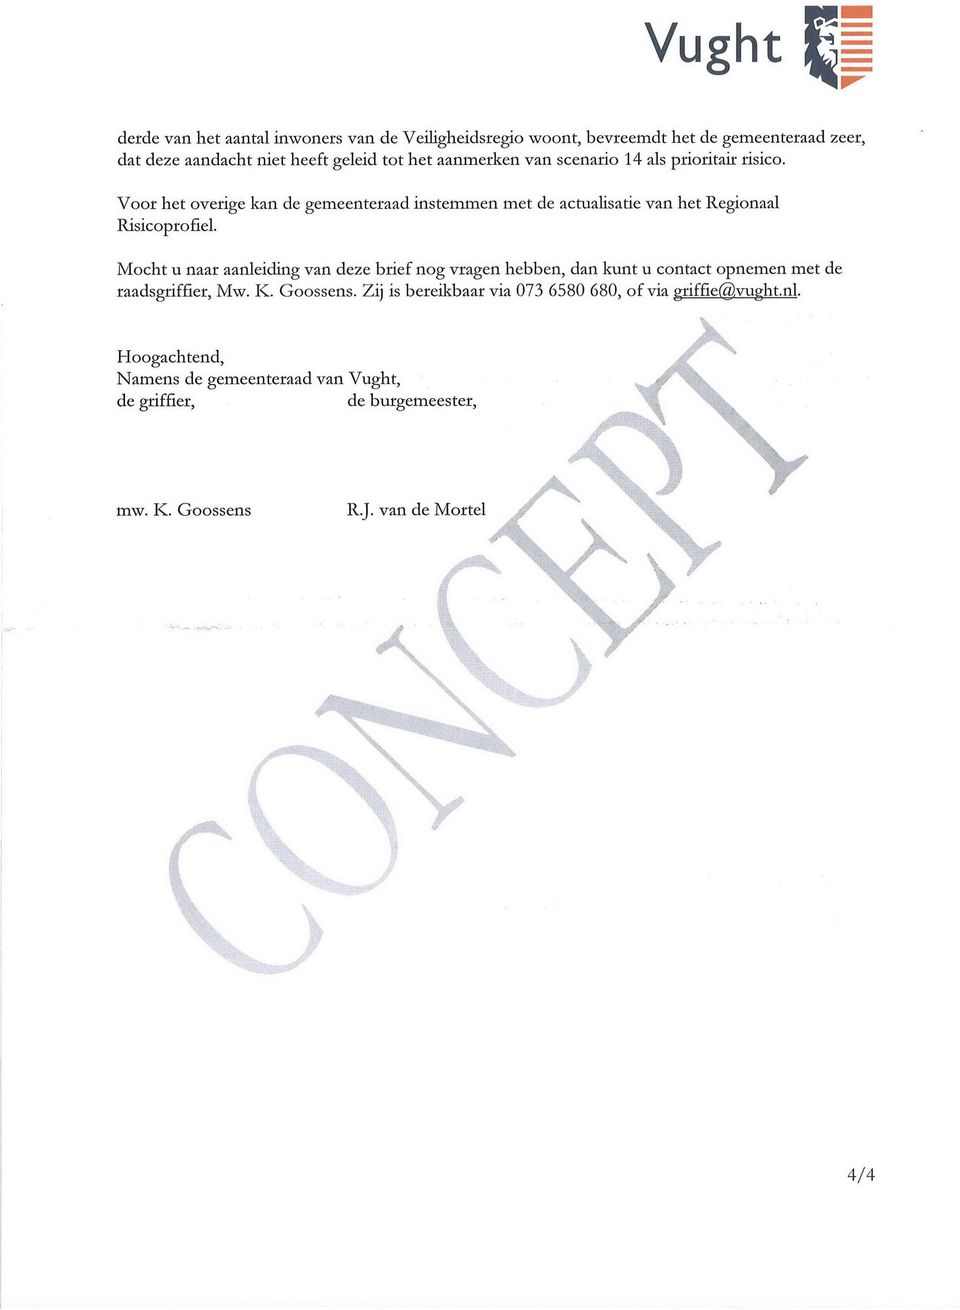 Mocht u naar aanleiding van deze brief nog vragen hebben, dan kunt u contact opnemen met de raadsgriffier, Mw. K. Goossens.